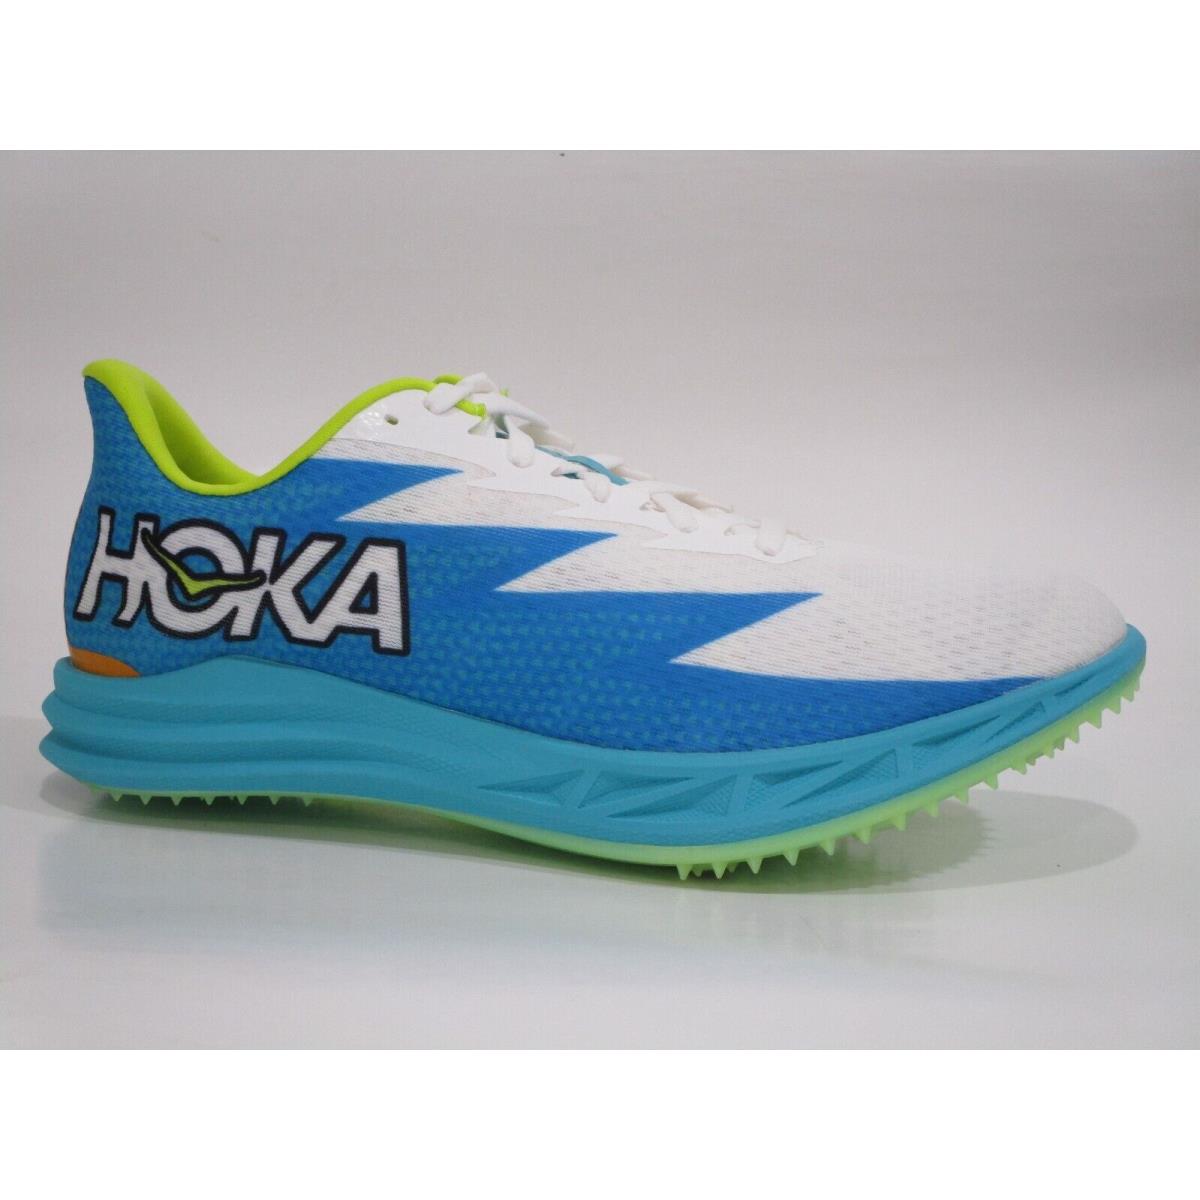 Hoka One One Unisex Crescendo MD Running Sneaker Shoes Men s 9 / Women s 10.5